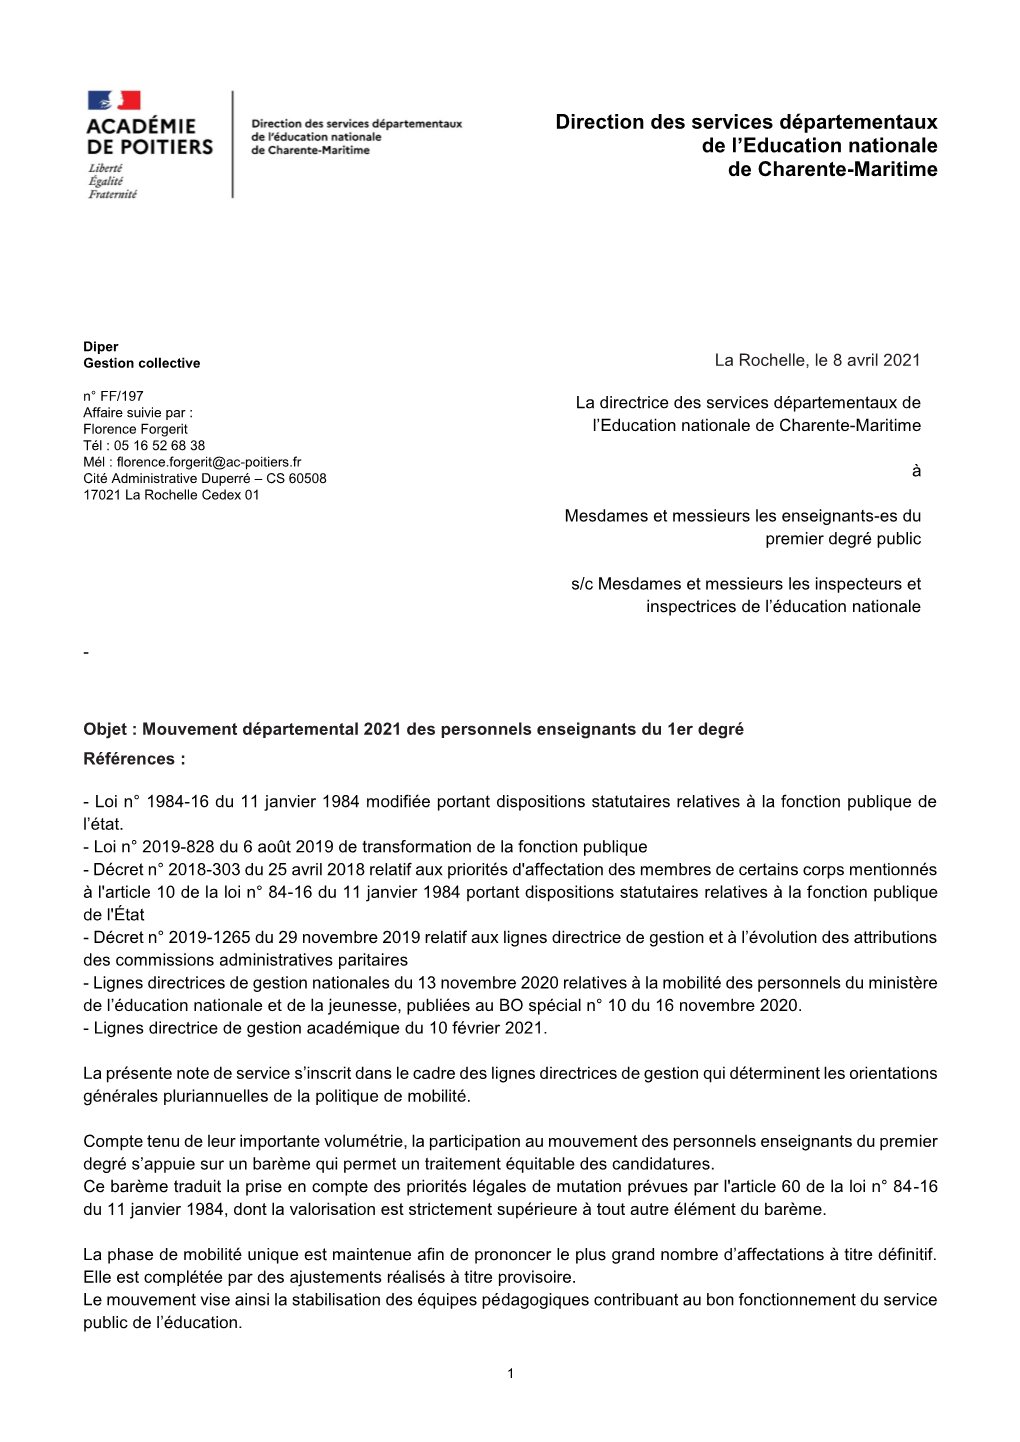 Direction Des Services Départementaux De L'education Nationale De Charente-Maritime